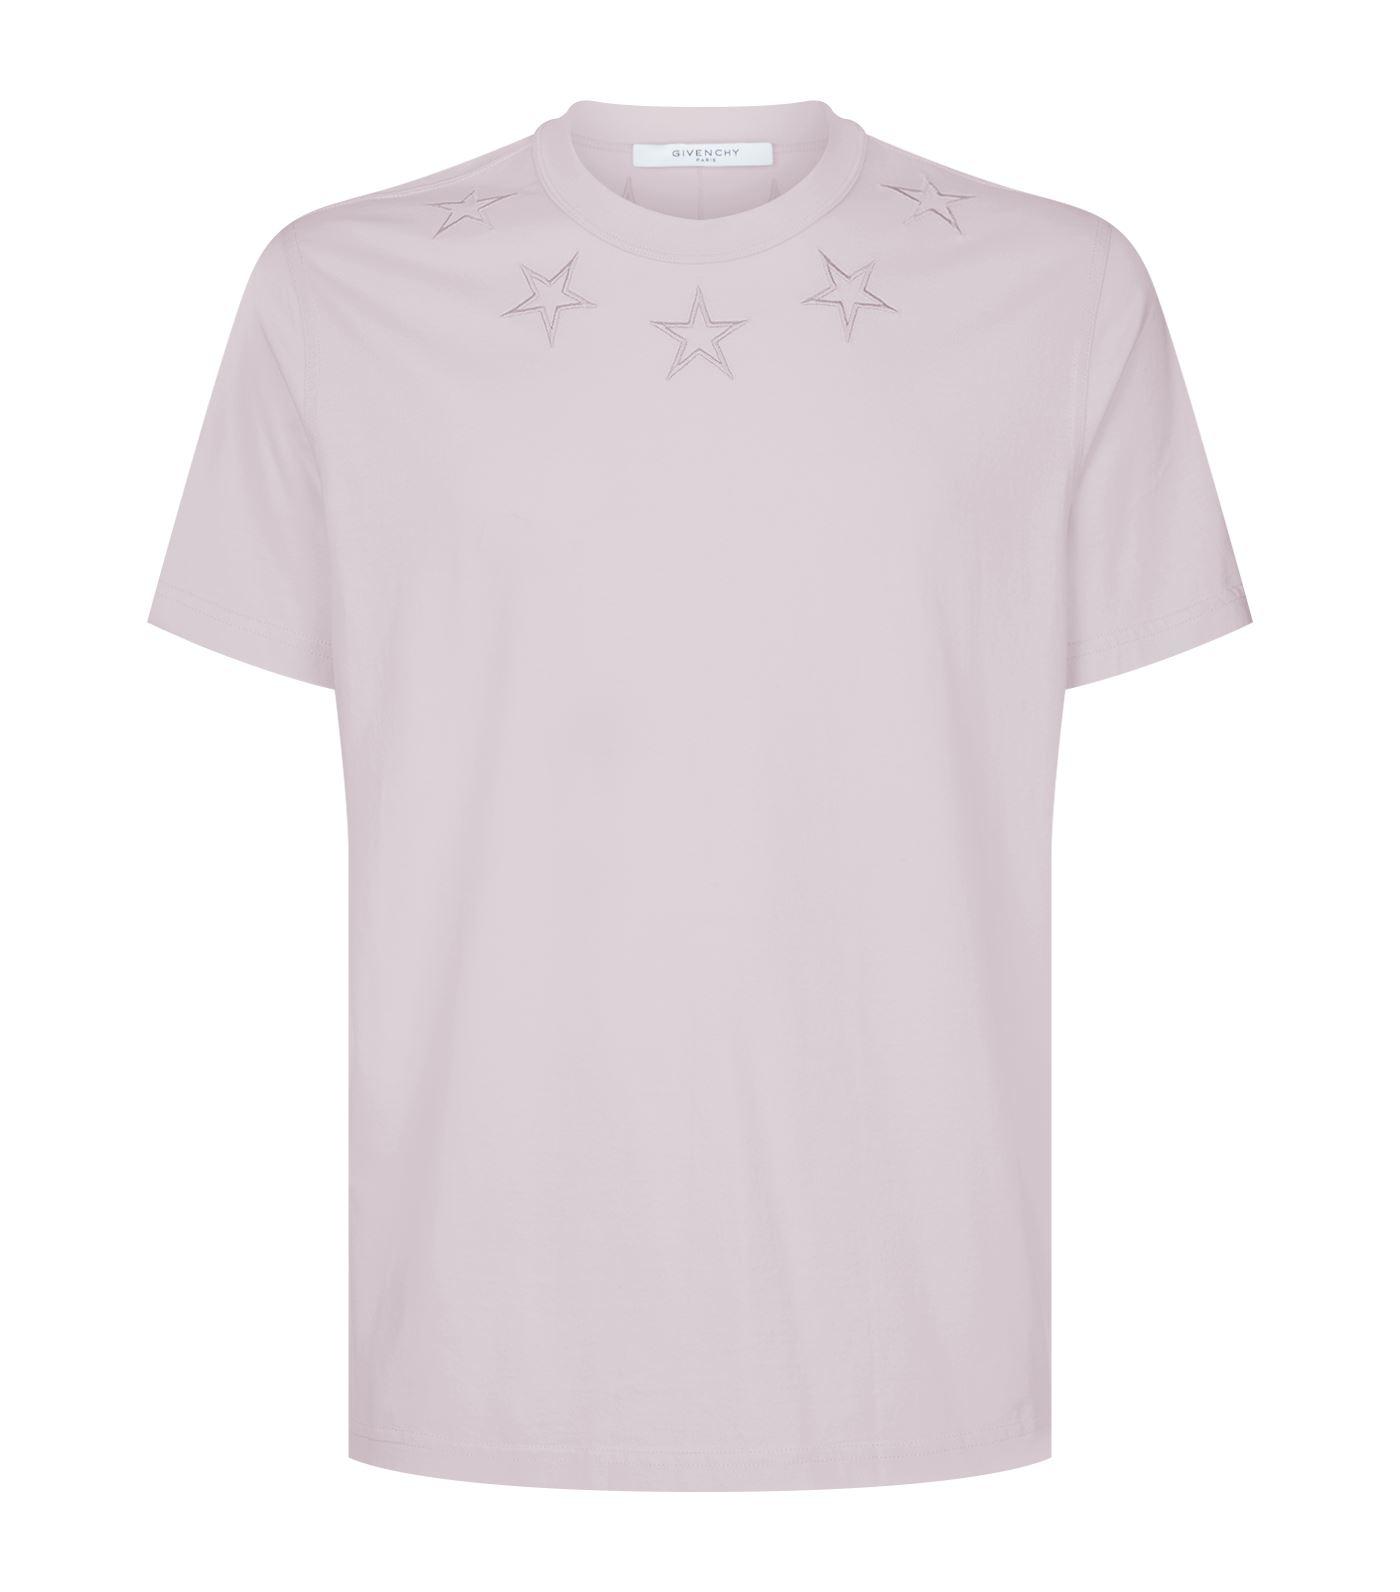 givenchy pink t shirt